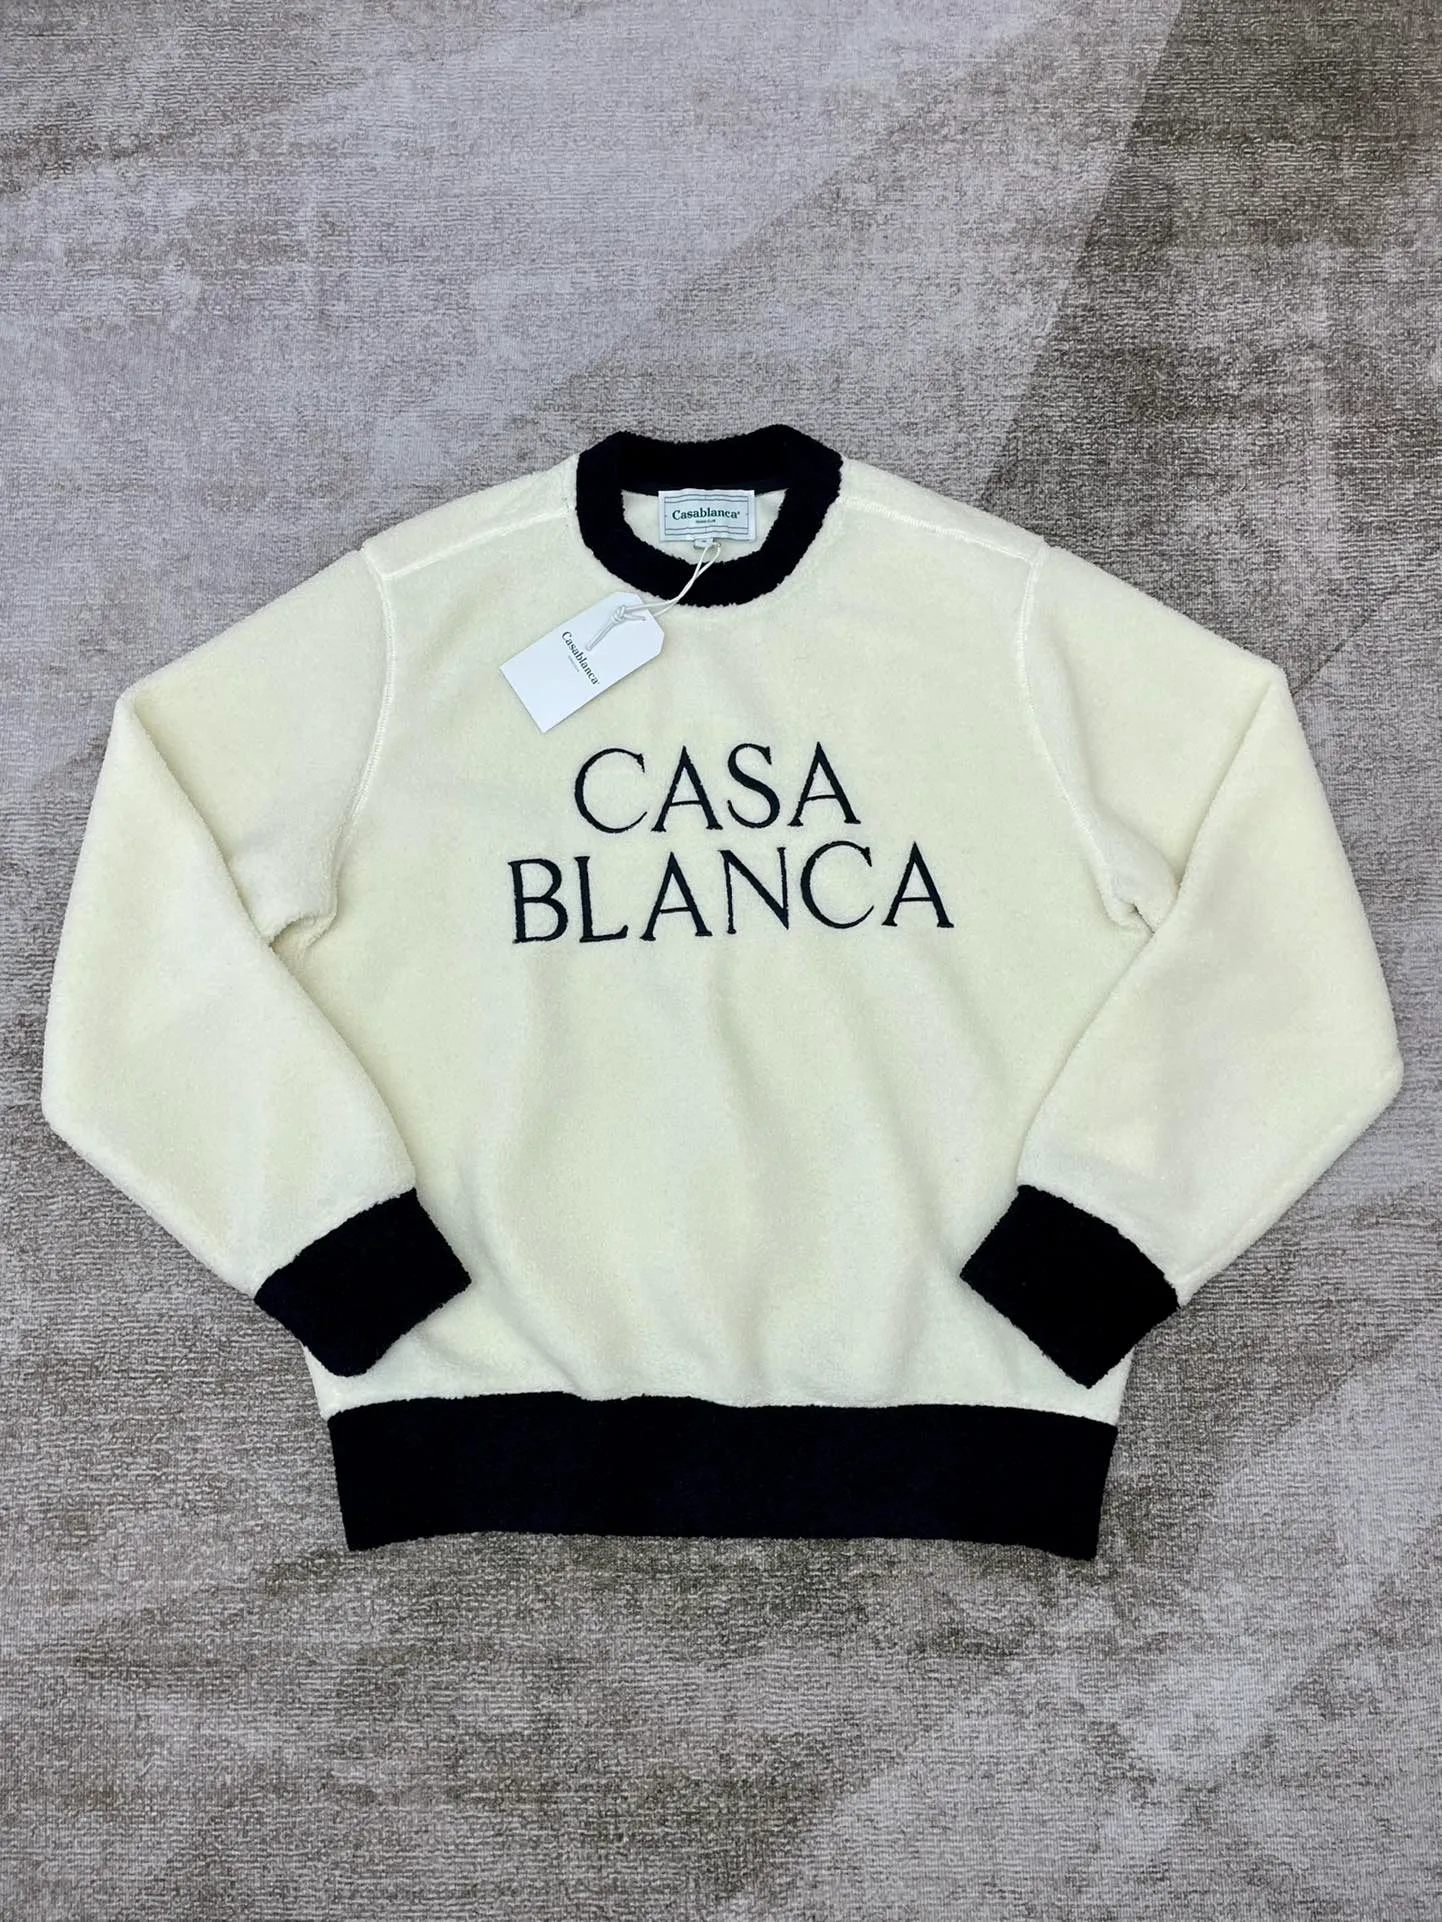 Casa Blanca Casablancas Bluza Mężczyźni Designer Swetery Modne długie rękawy Casablanc luźne sweter Pullower Knitted Jacquard 544